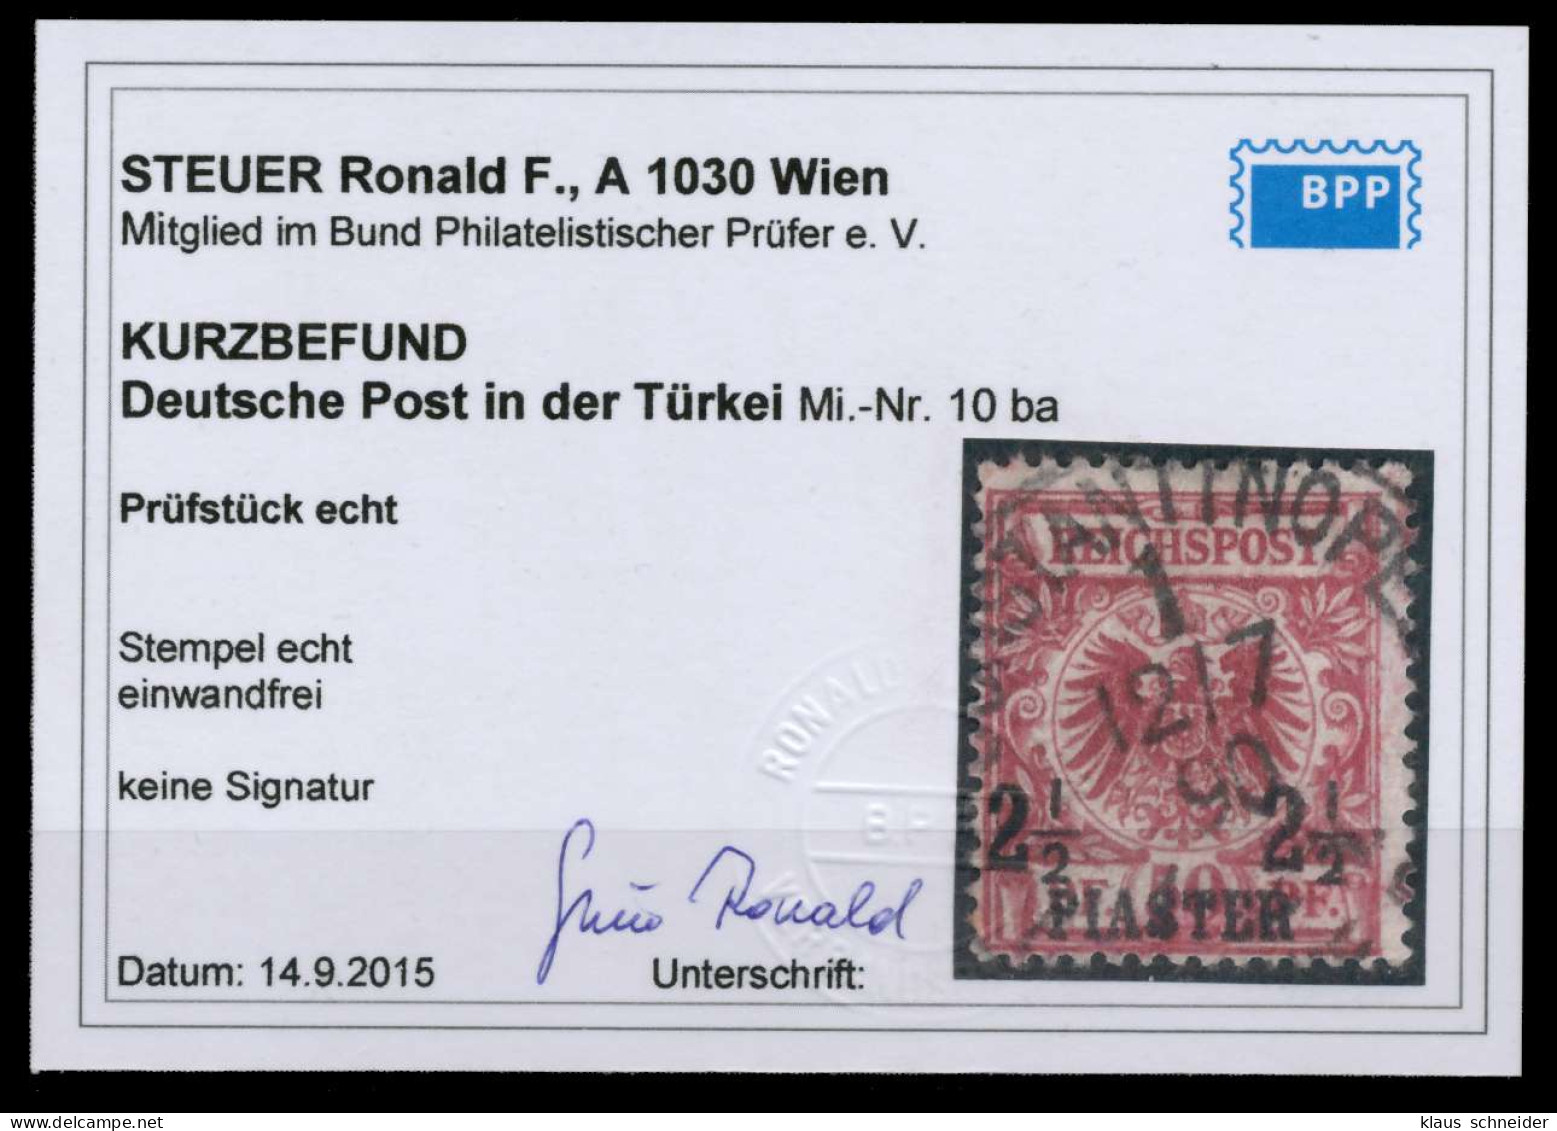 DEUTSCHE AUSLANDSPOSTÄMTER TÜRKEI Nr 10ba ZENTR X6CDE92 - Deutsche Post In Der Türkei